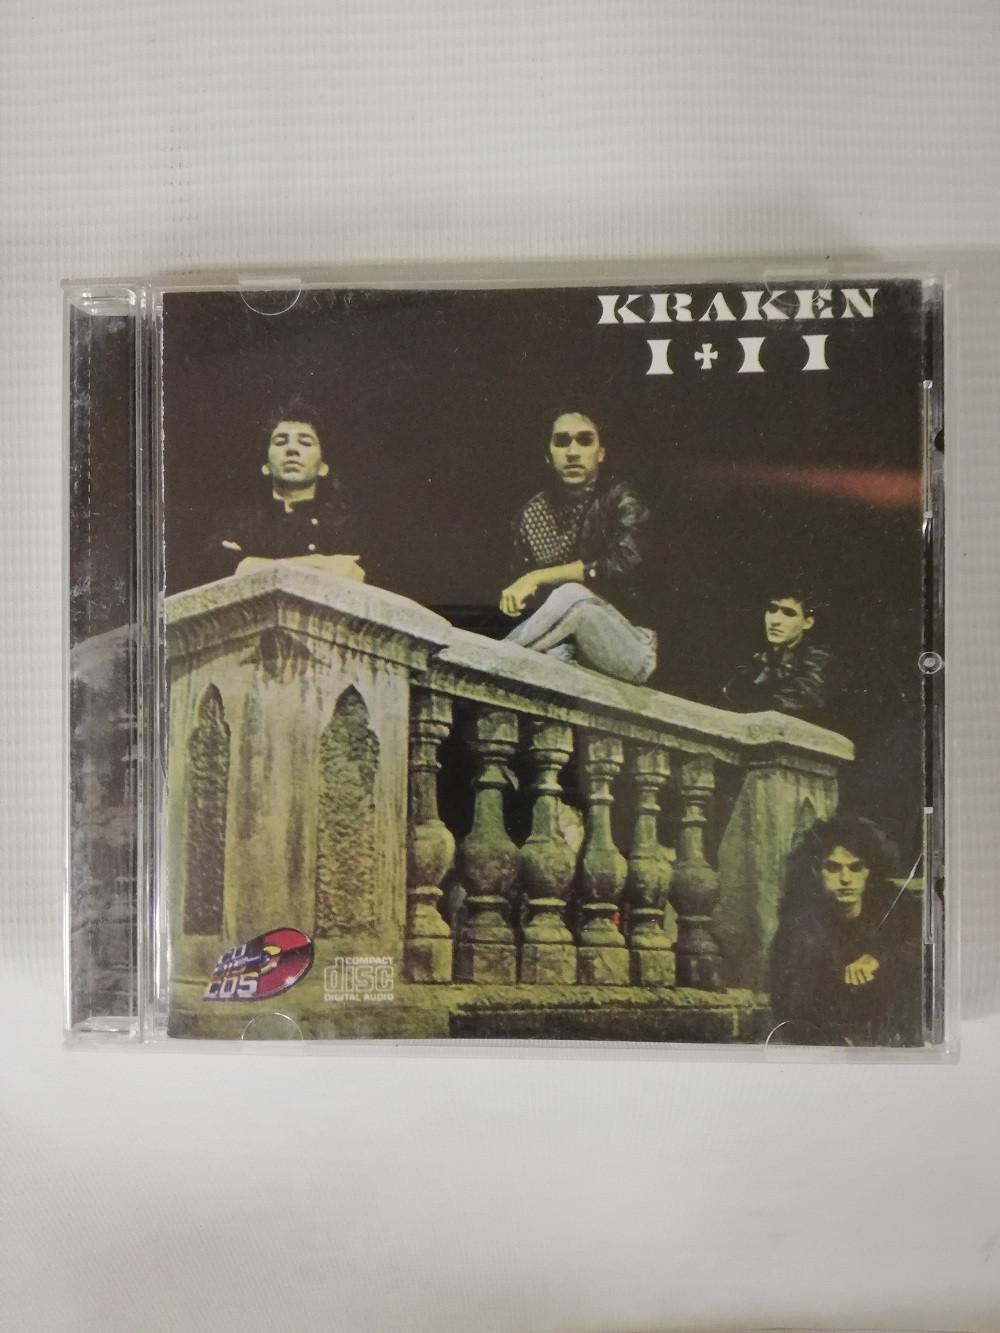 Imagen CD KRAKEN - I + II